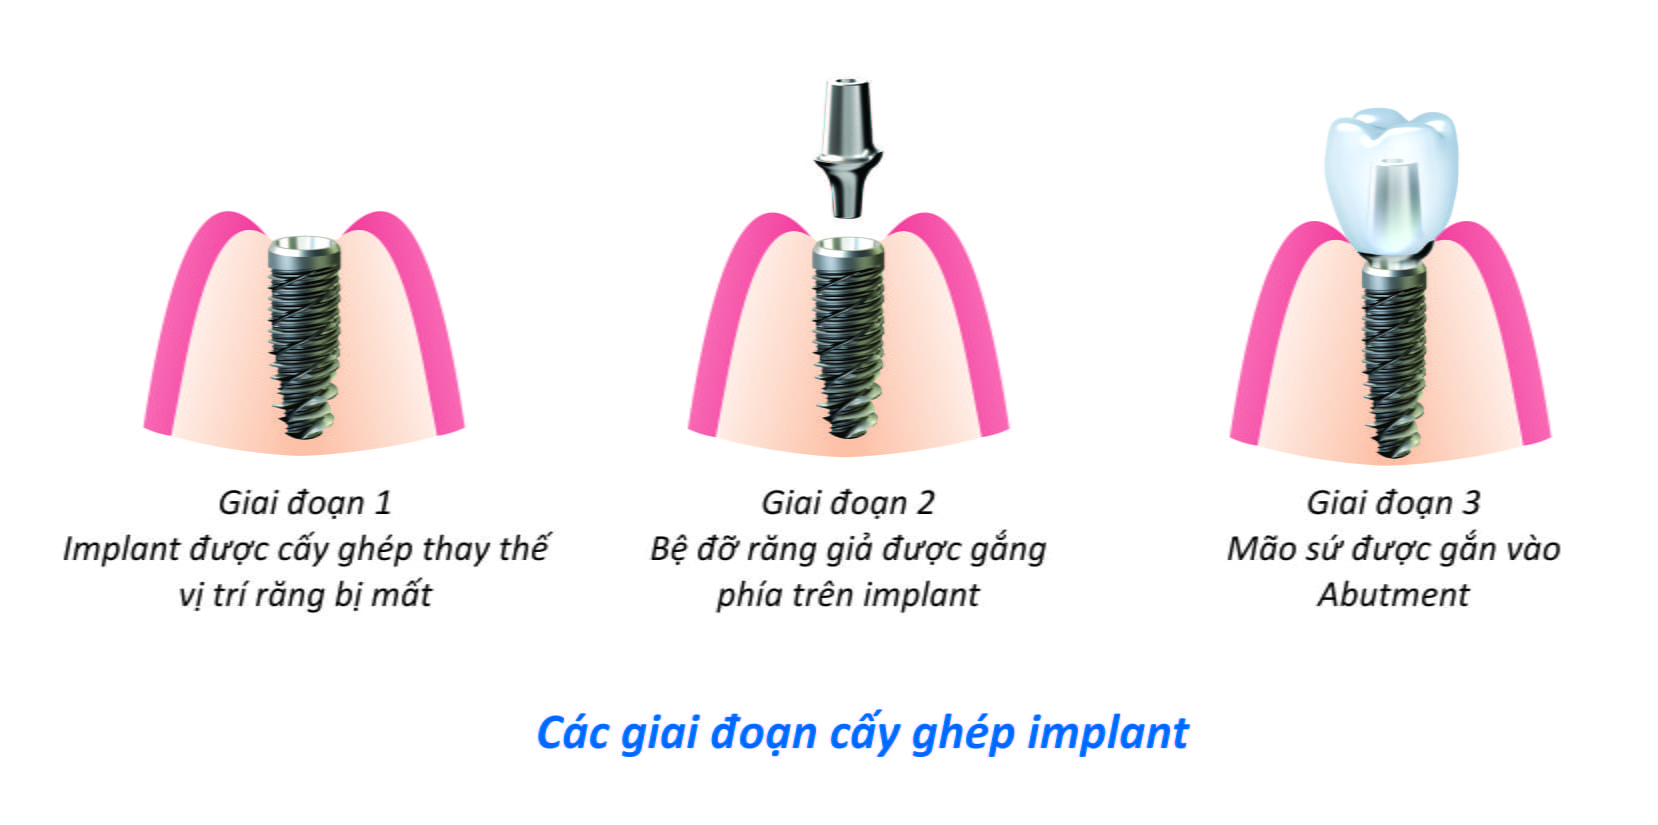 Quy trình cấy ghép mini implant